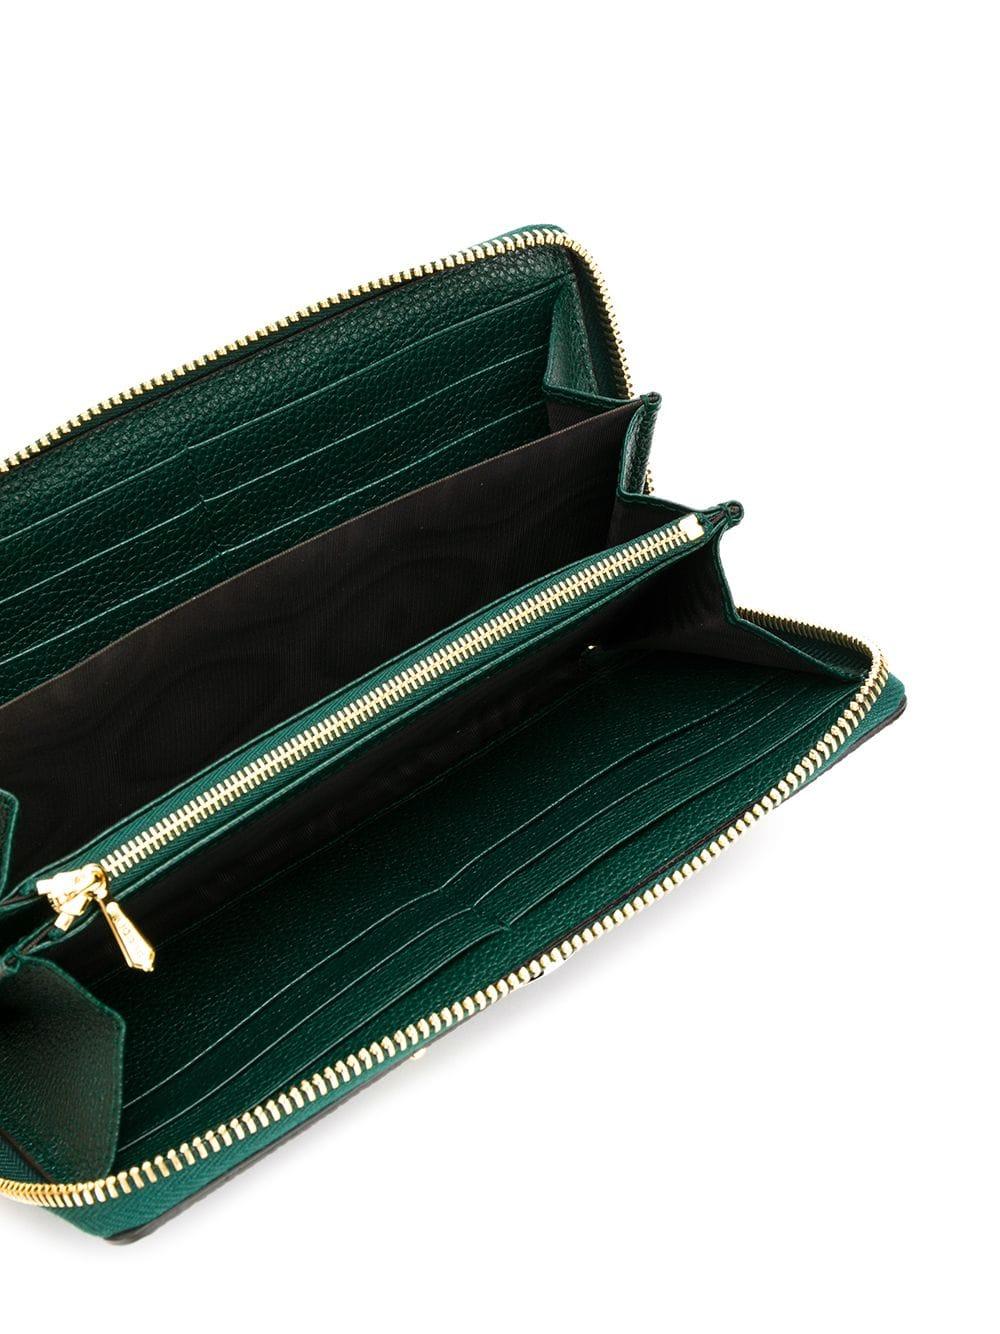 Gucci Zumi 548 Zip-around Leather Wallet in Green - Lyst